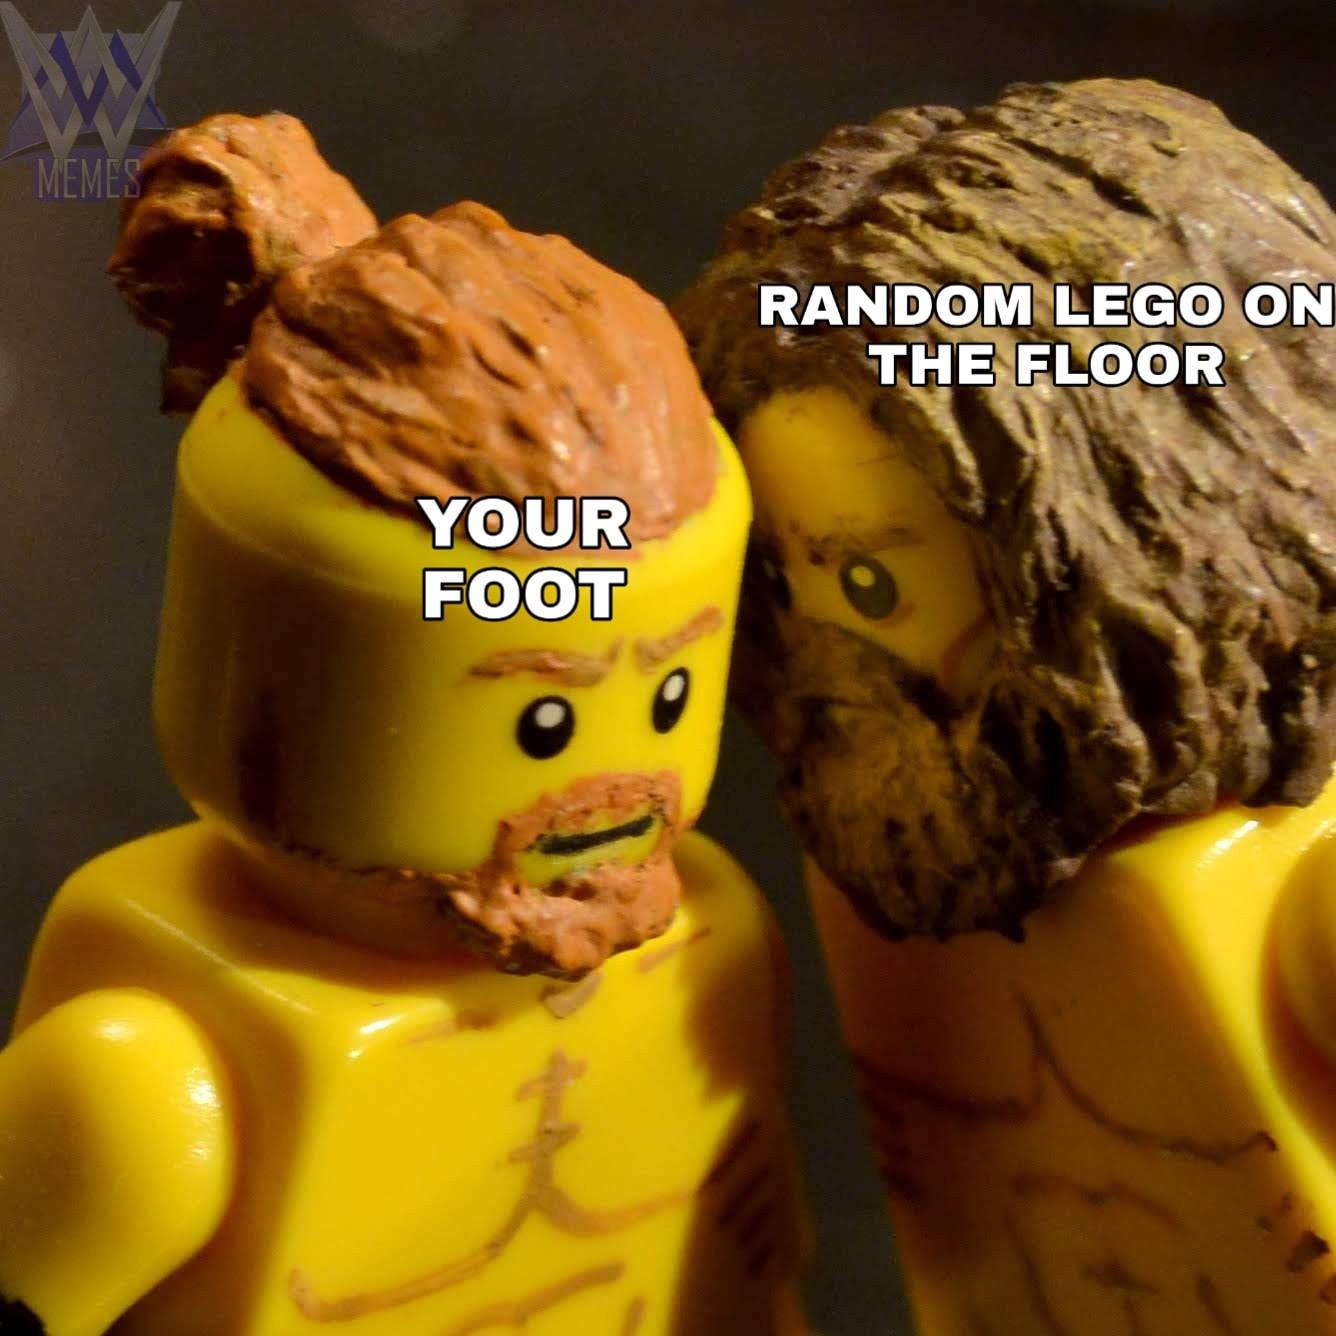 WWE wrestling memes - lego on the floor meme - Memes Your Foot Random Lego On The Floor